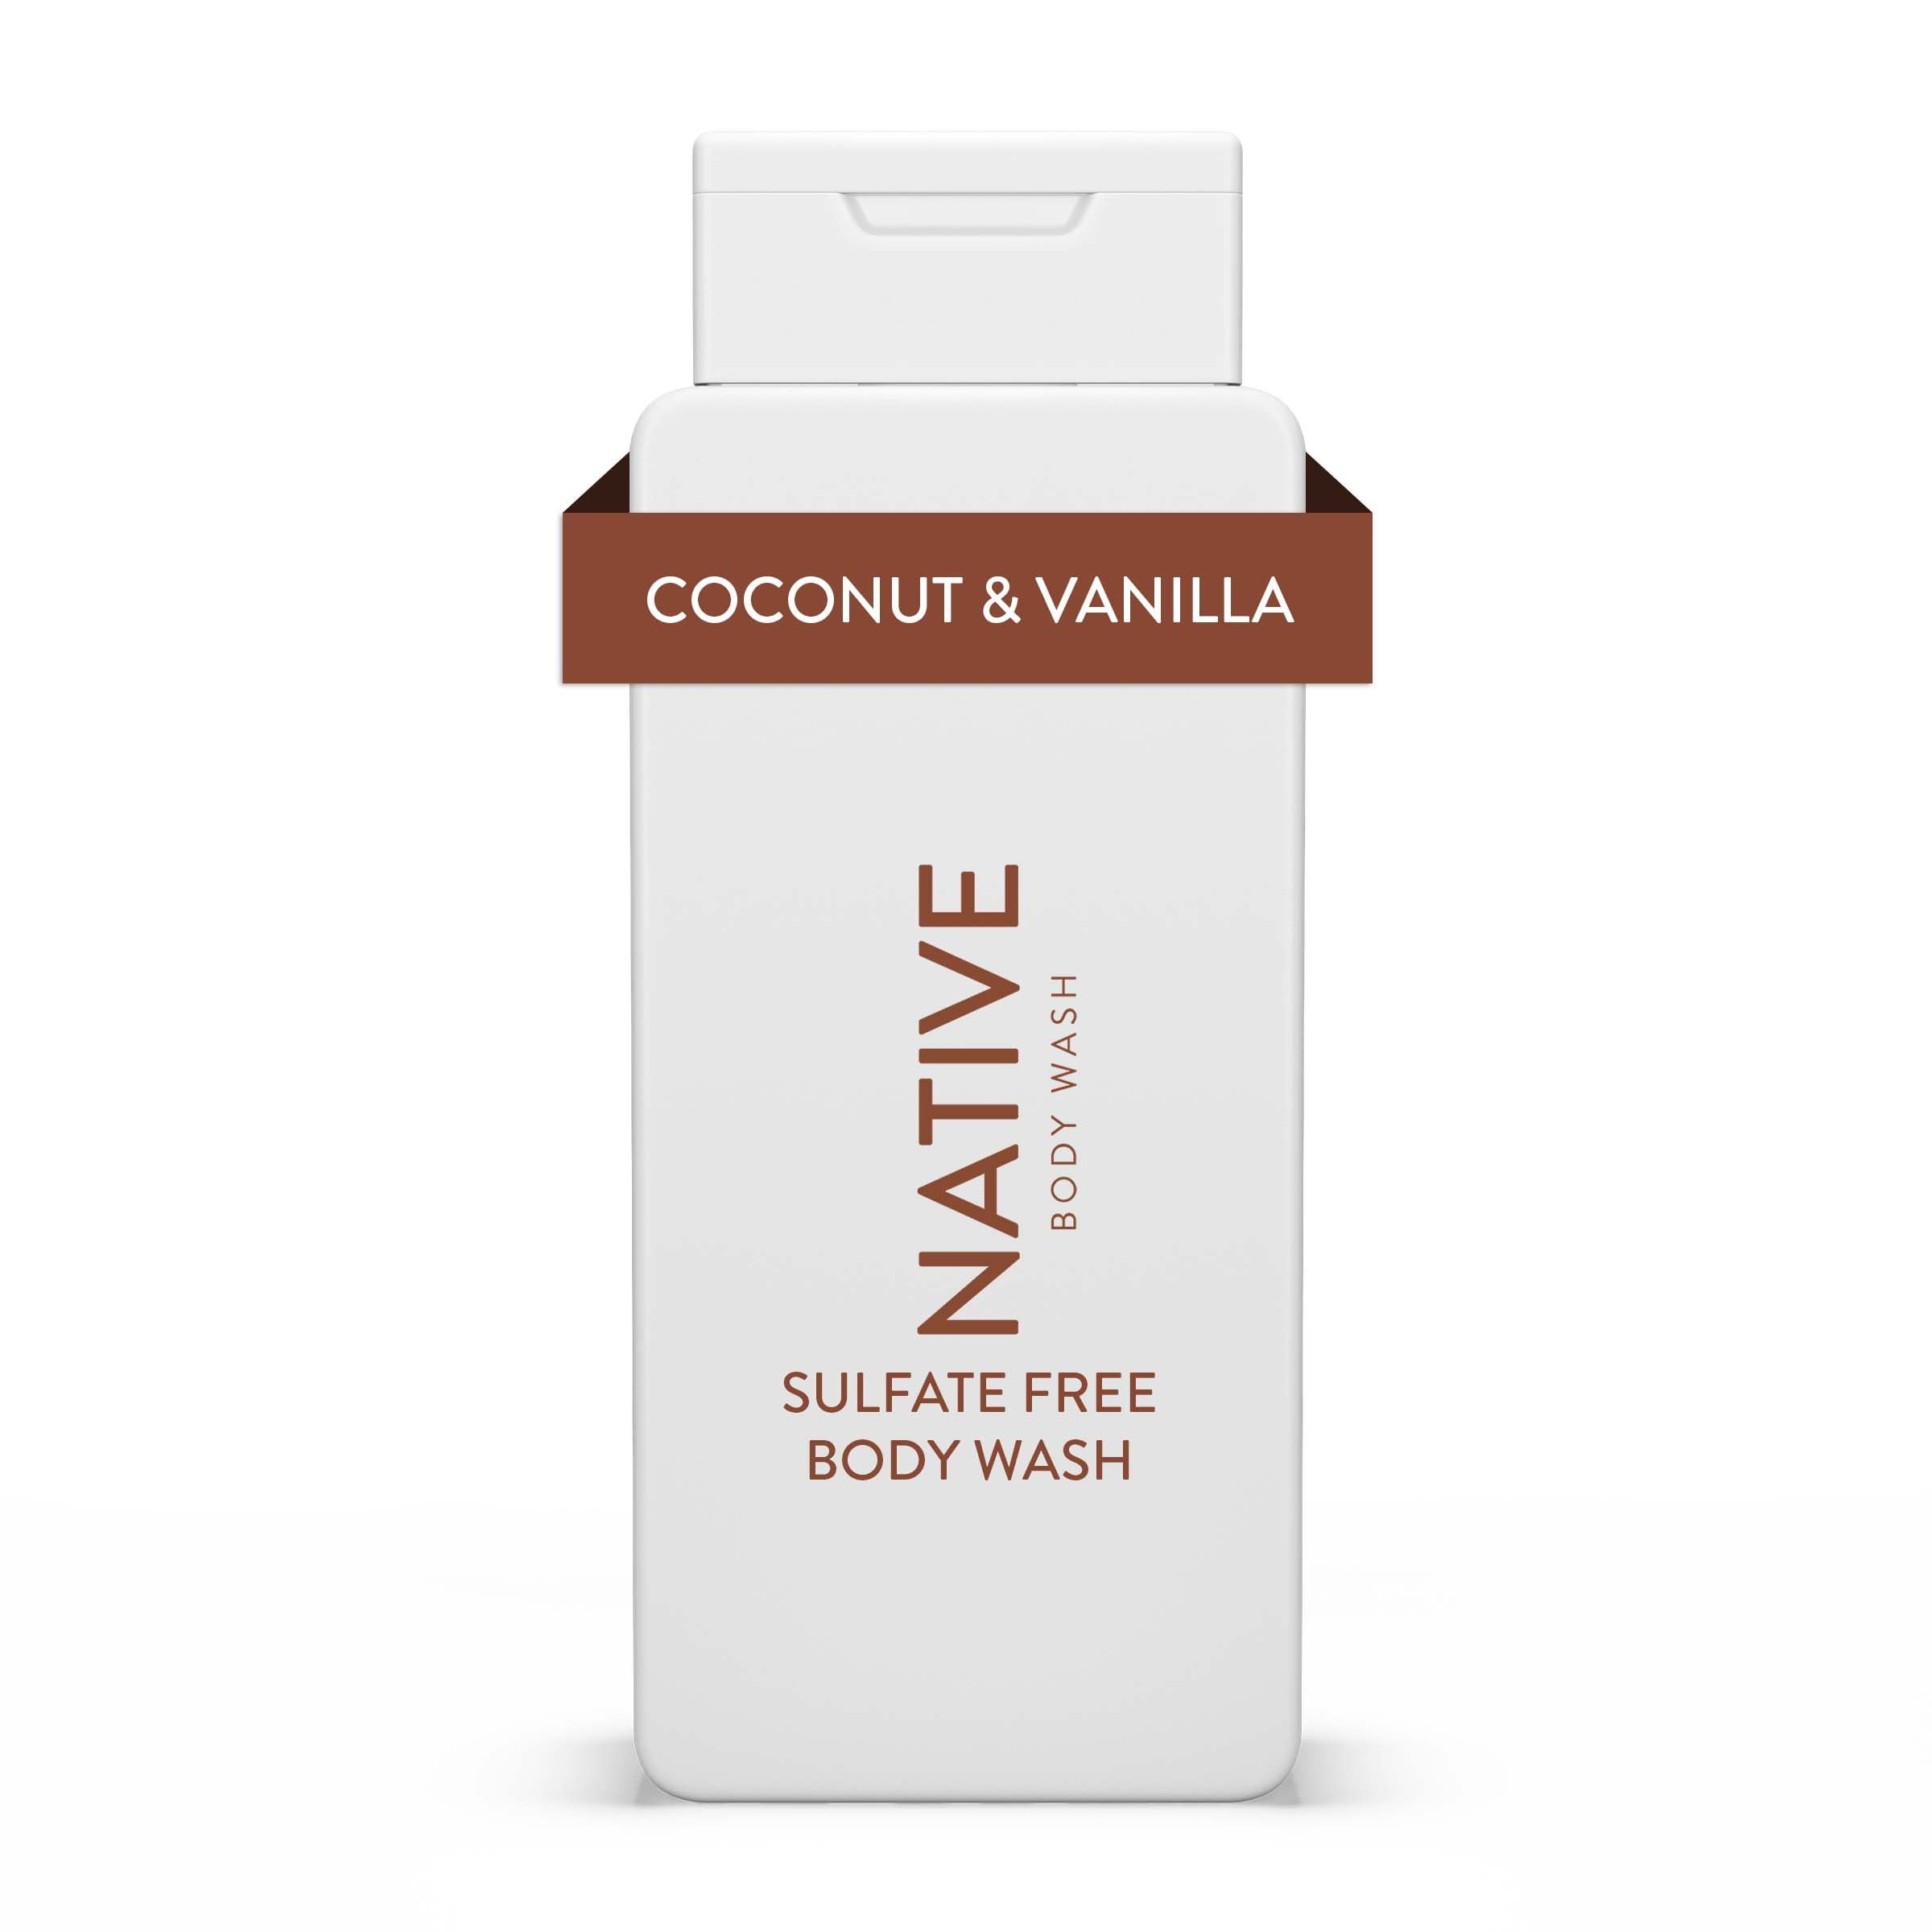 Native Natural Body Wash, Coconut & Vanilla, Sulfate Free, Paraben Free, 18 oz